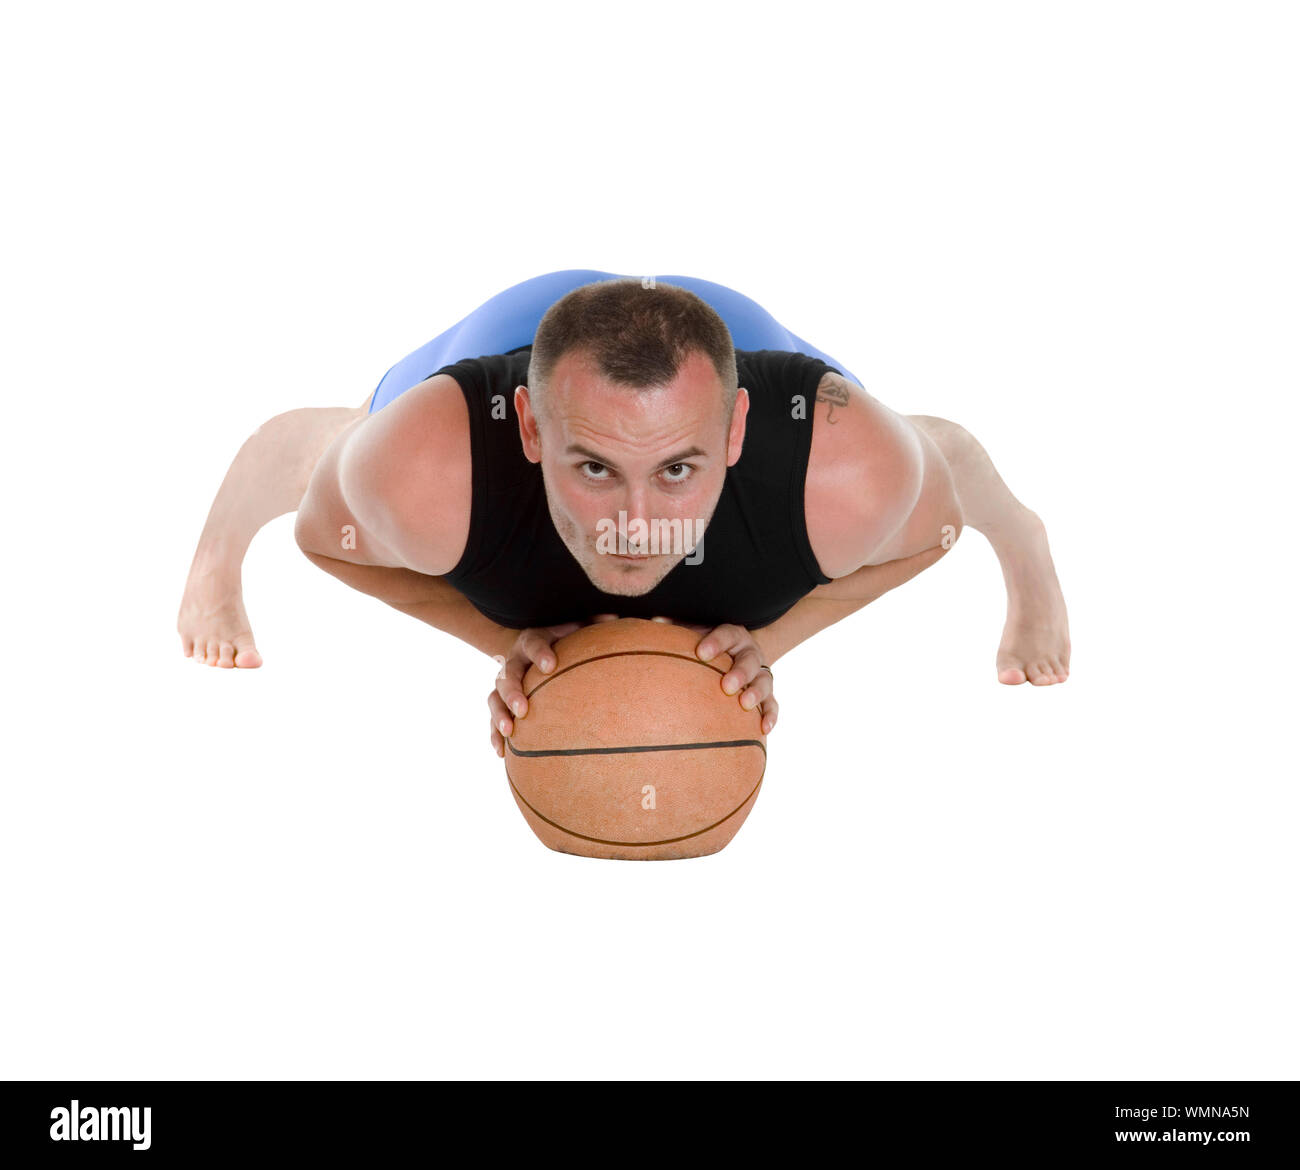 Homme d'une quarantaine d'entraînement Pilates au sol avec ballon, isolated on white Banque D'Images